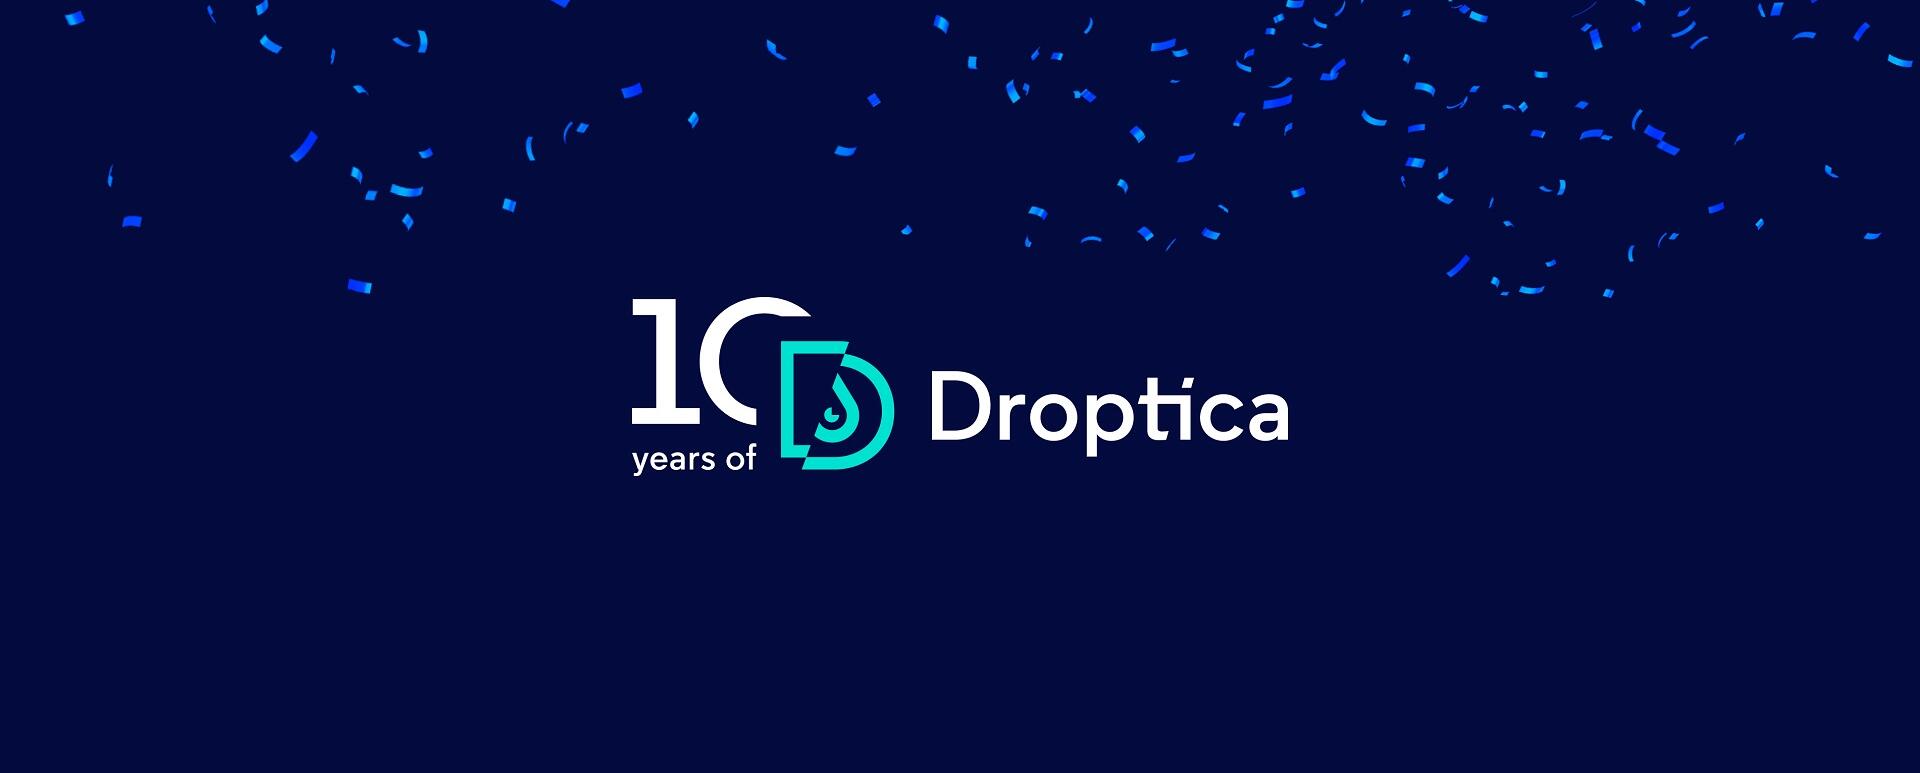 W lutym 2023 roku Droptica obchodziła dziesiąte urodziny, świętując długą obecność na rynku.